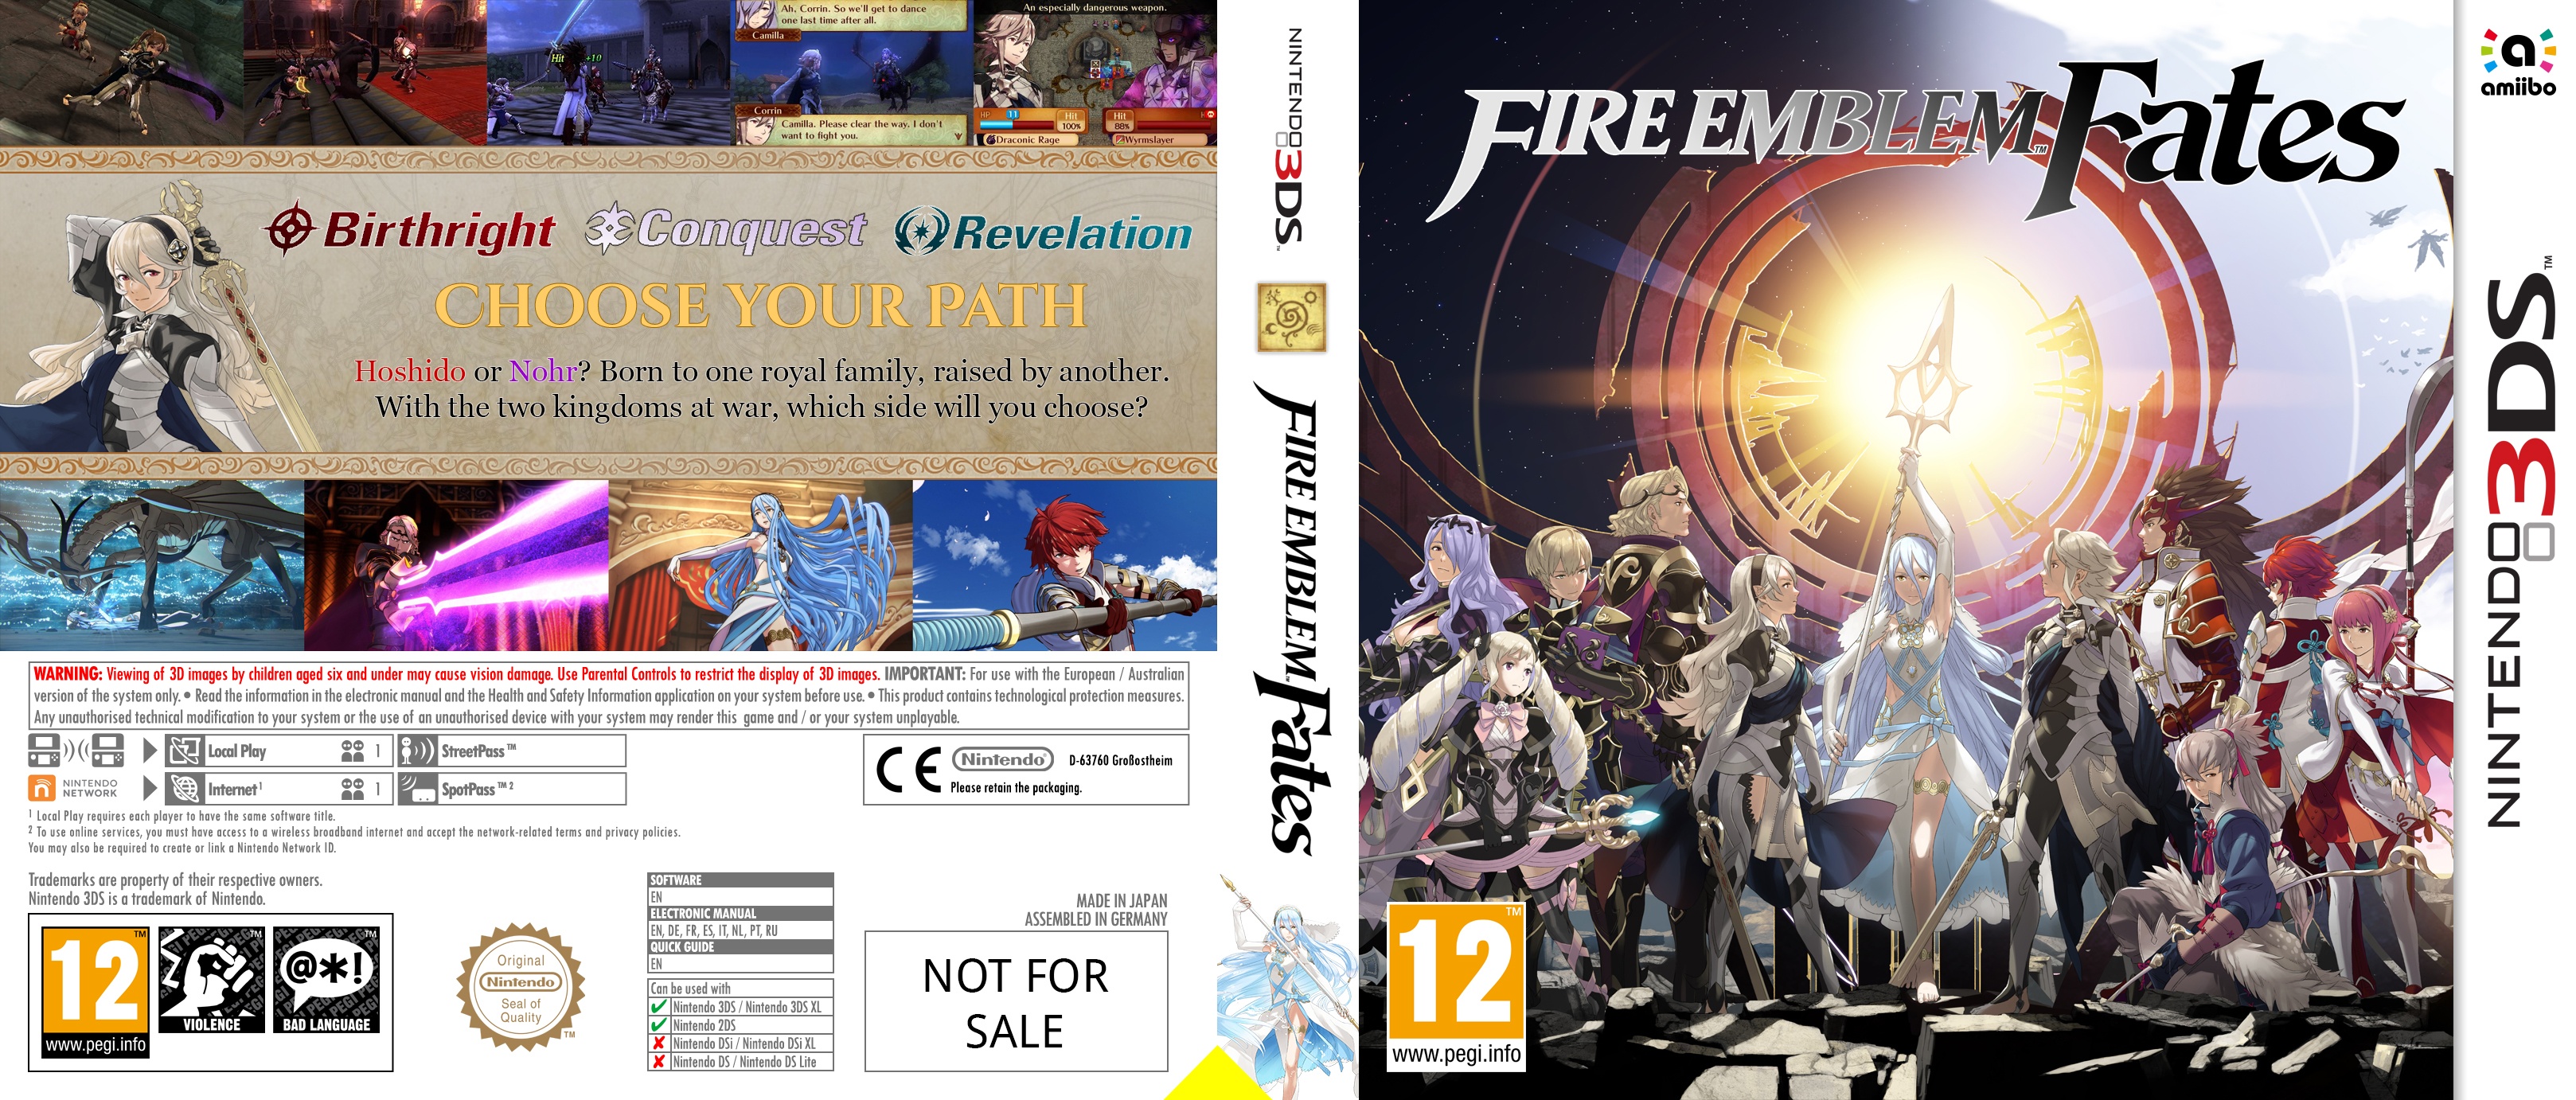 Fire Emblem Fates box cover